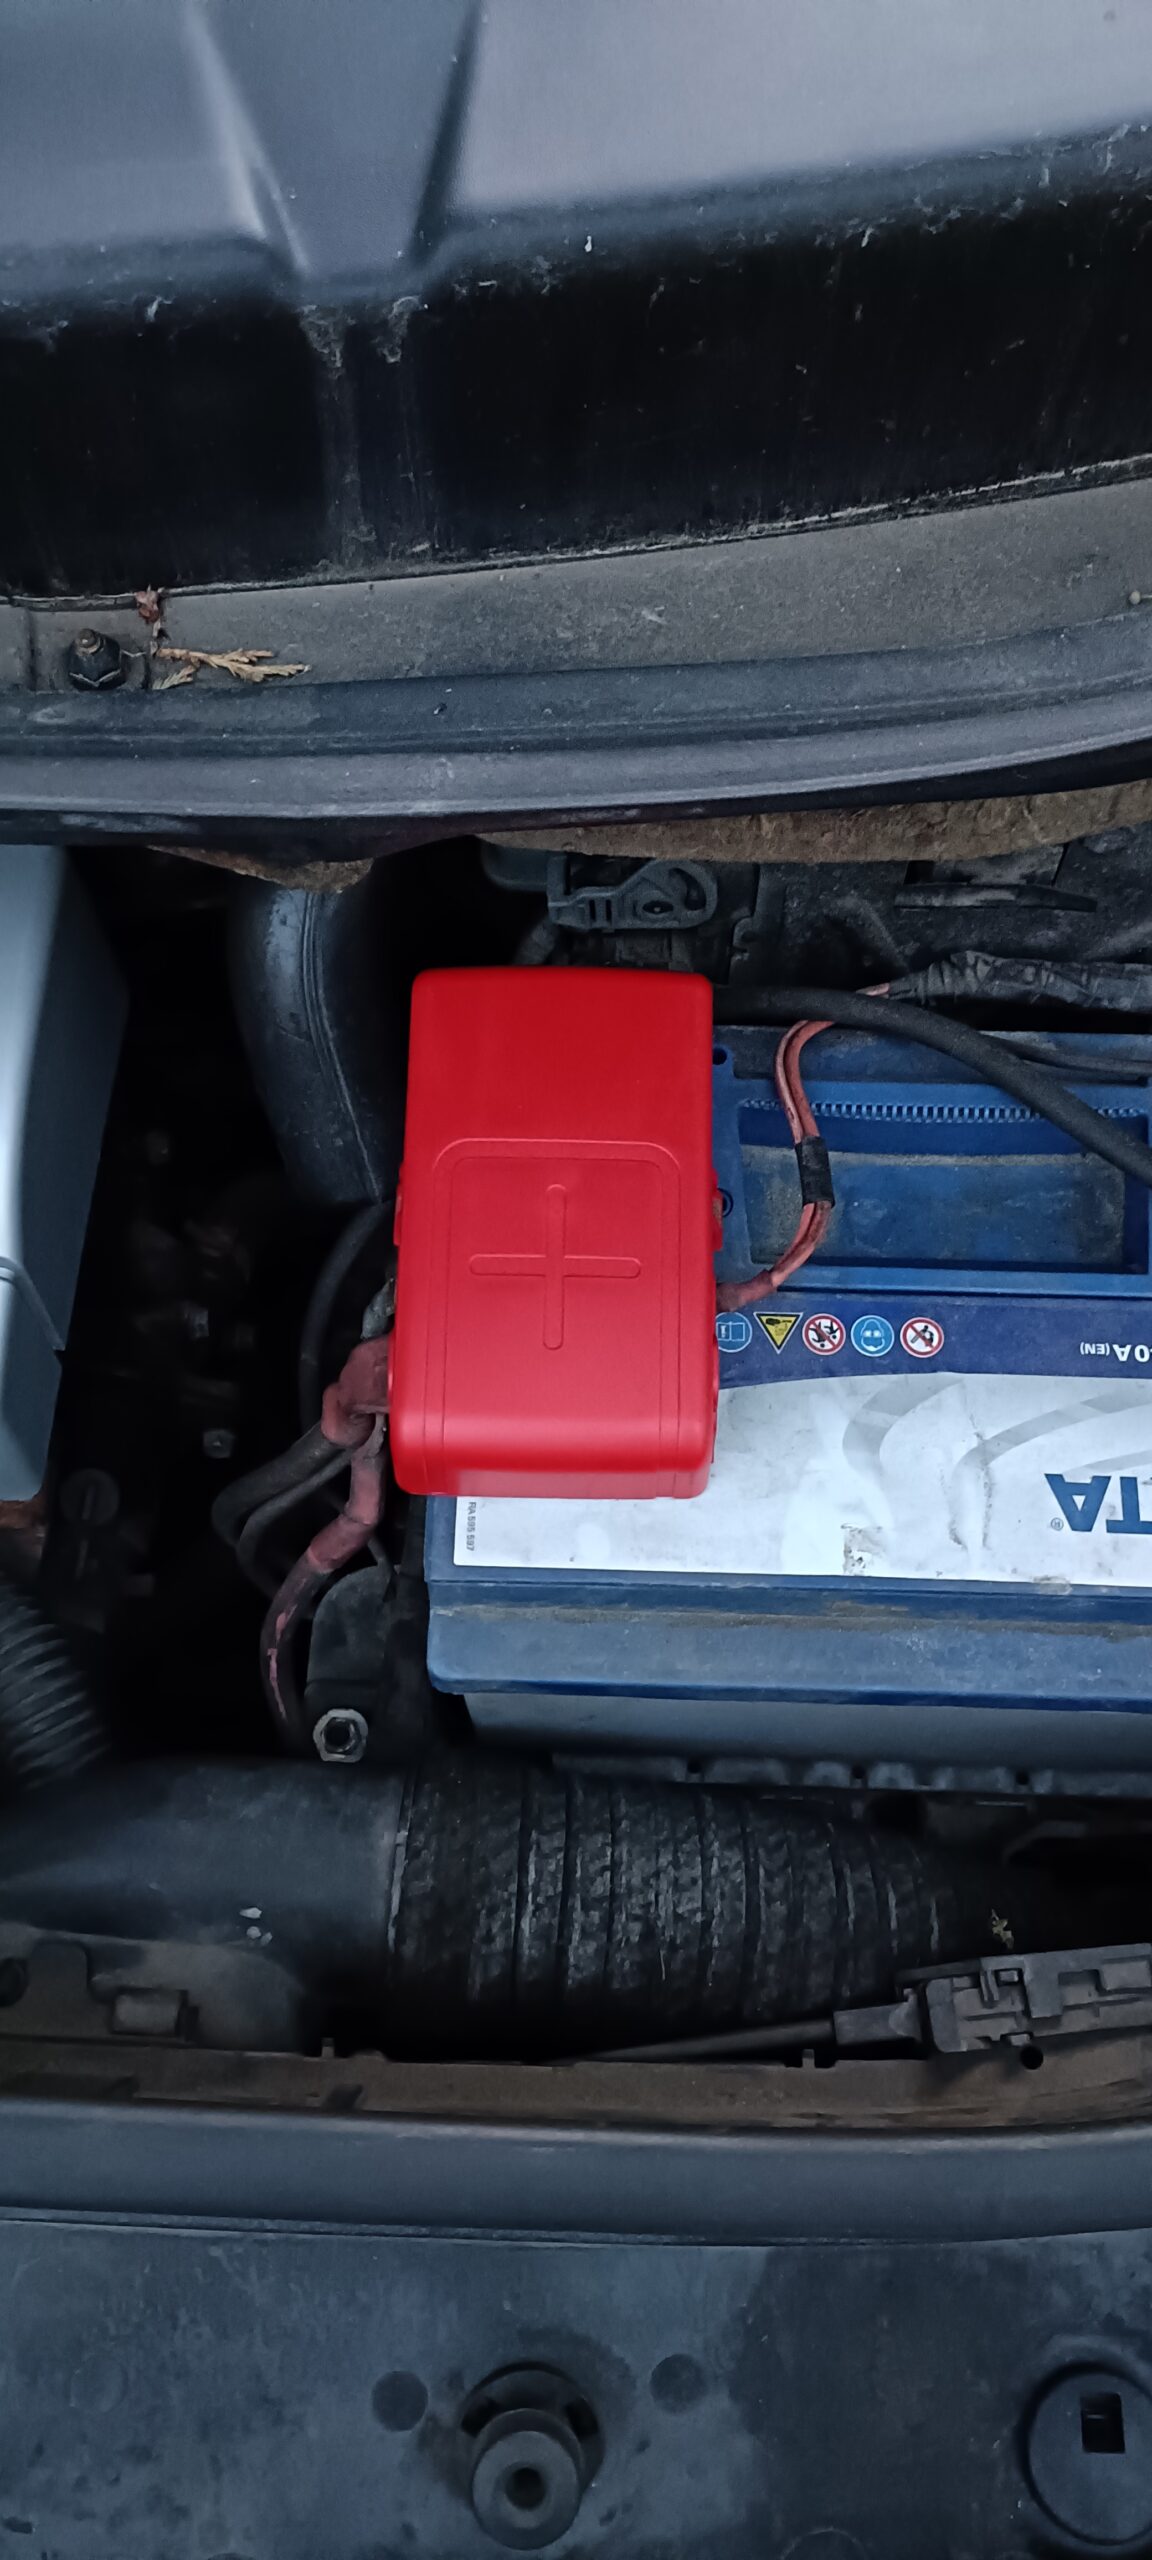 Batteriepolabdeckung Renault Scenic II - Warum verlegen